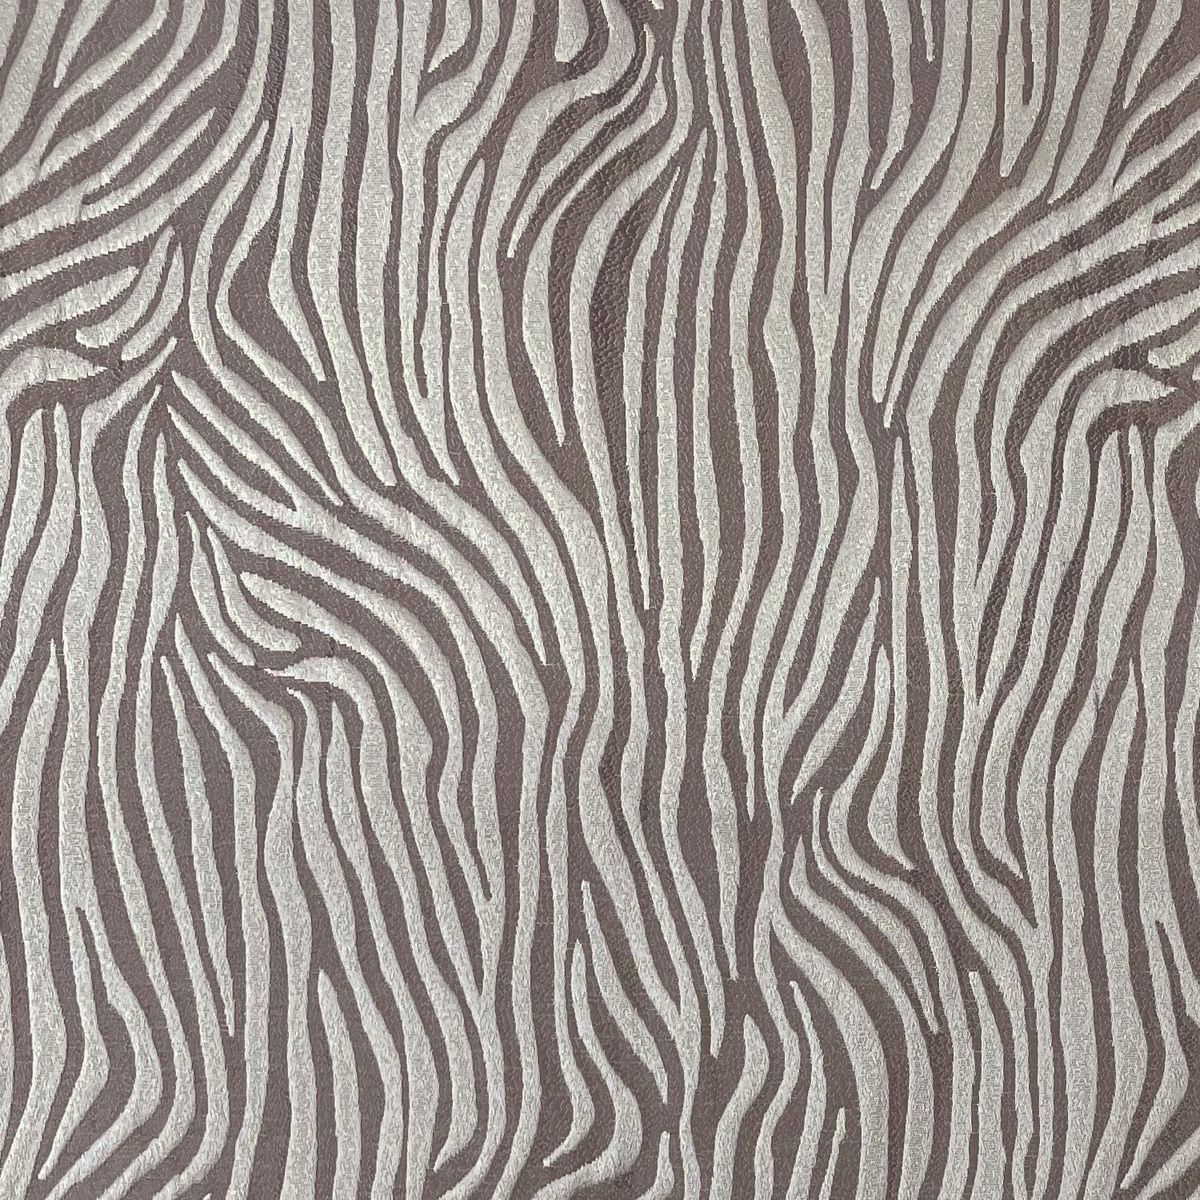 Tigre Buff Fabric by Chatham Glyn